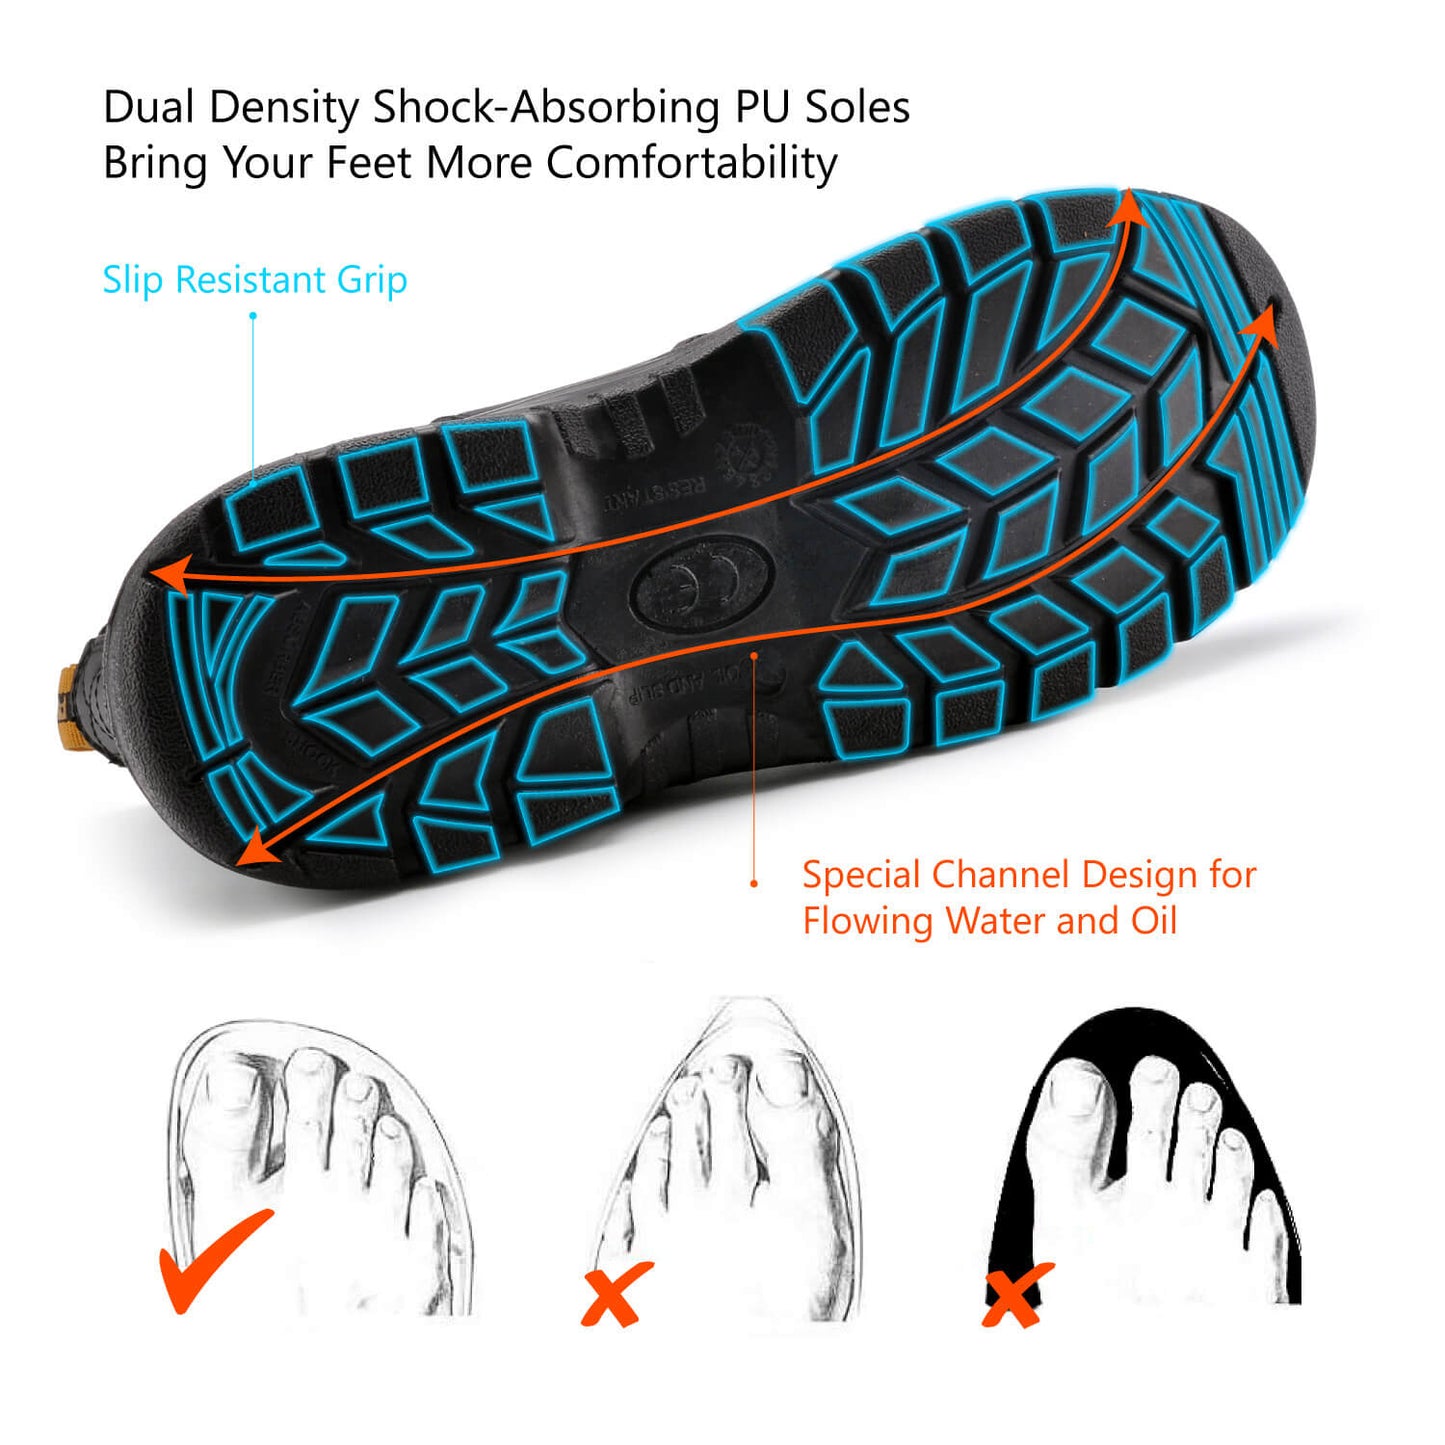 [Bundles] Safetoe Antler BK Slip-on Work Boots with 5 Pack Safetoe Crew Socks